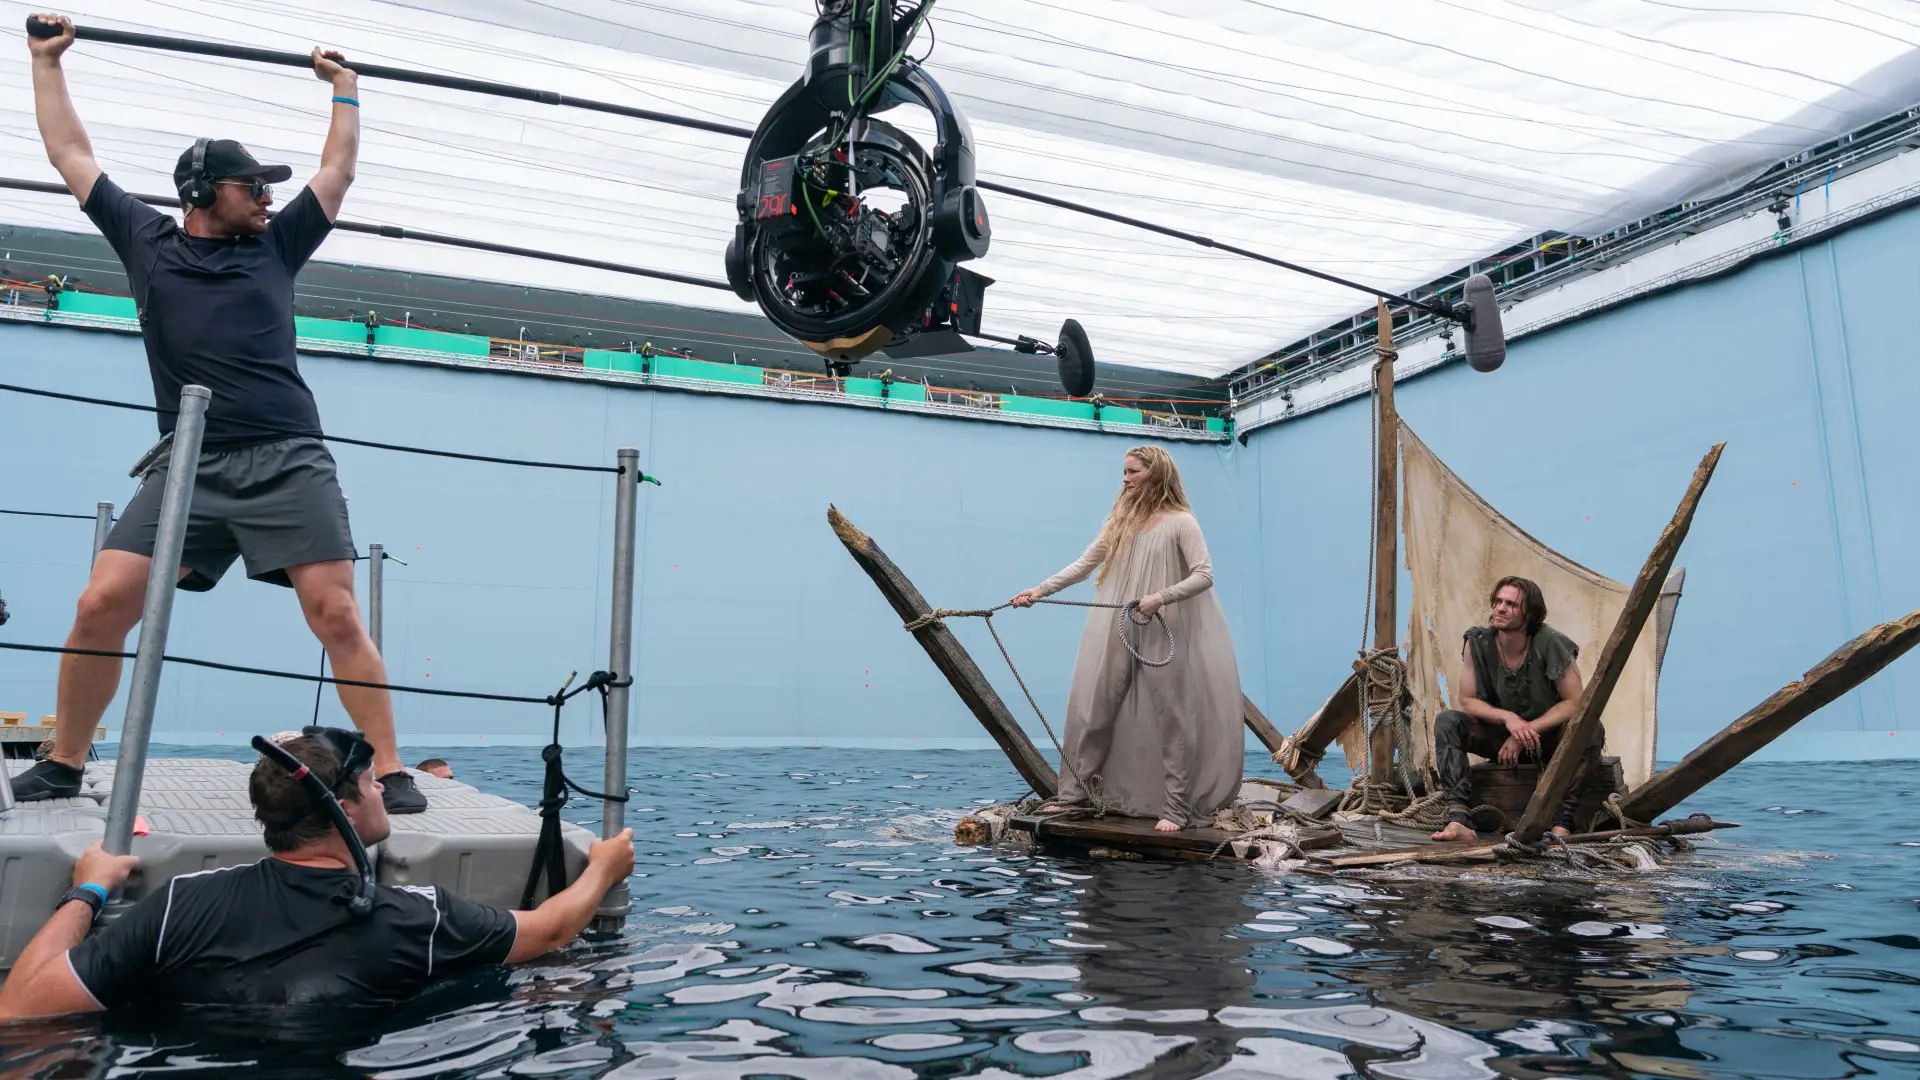 مورفید کلارک در نقش گالادریل روی بقایای یک قایق روی آب در محل فیلمبرداری سریال حلقه های قدرت